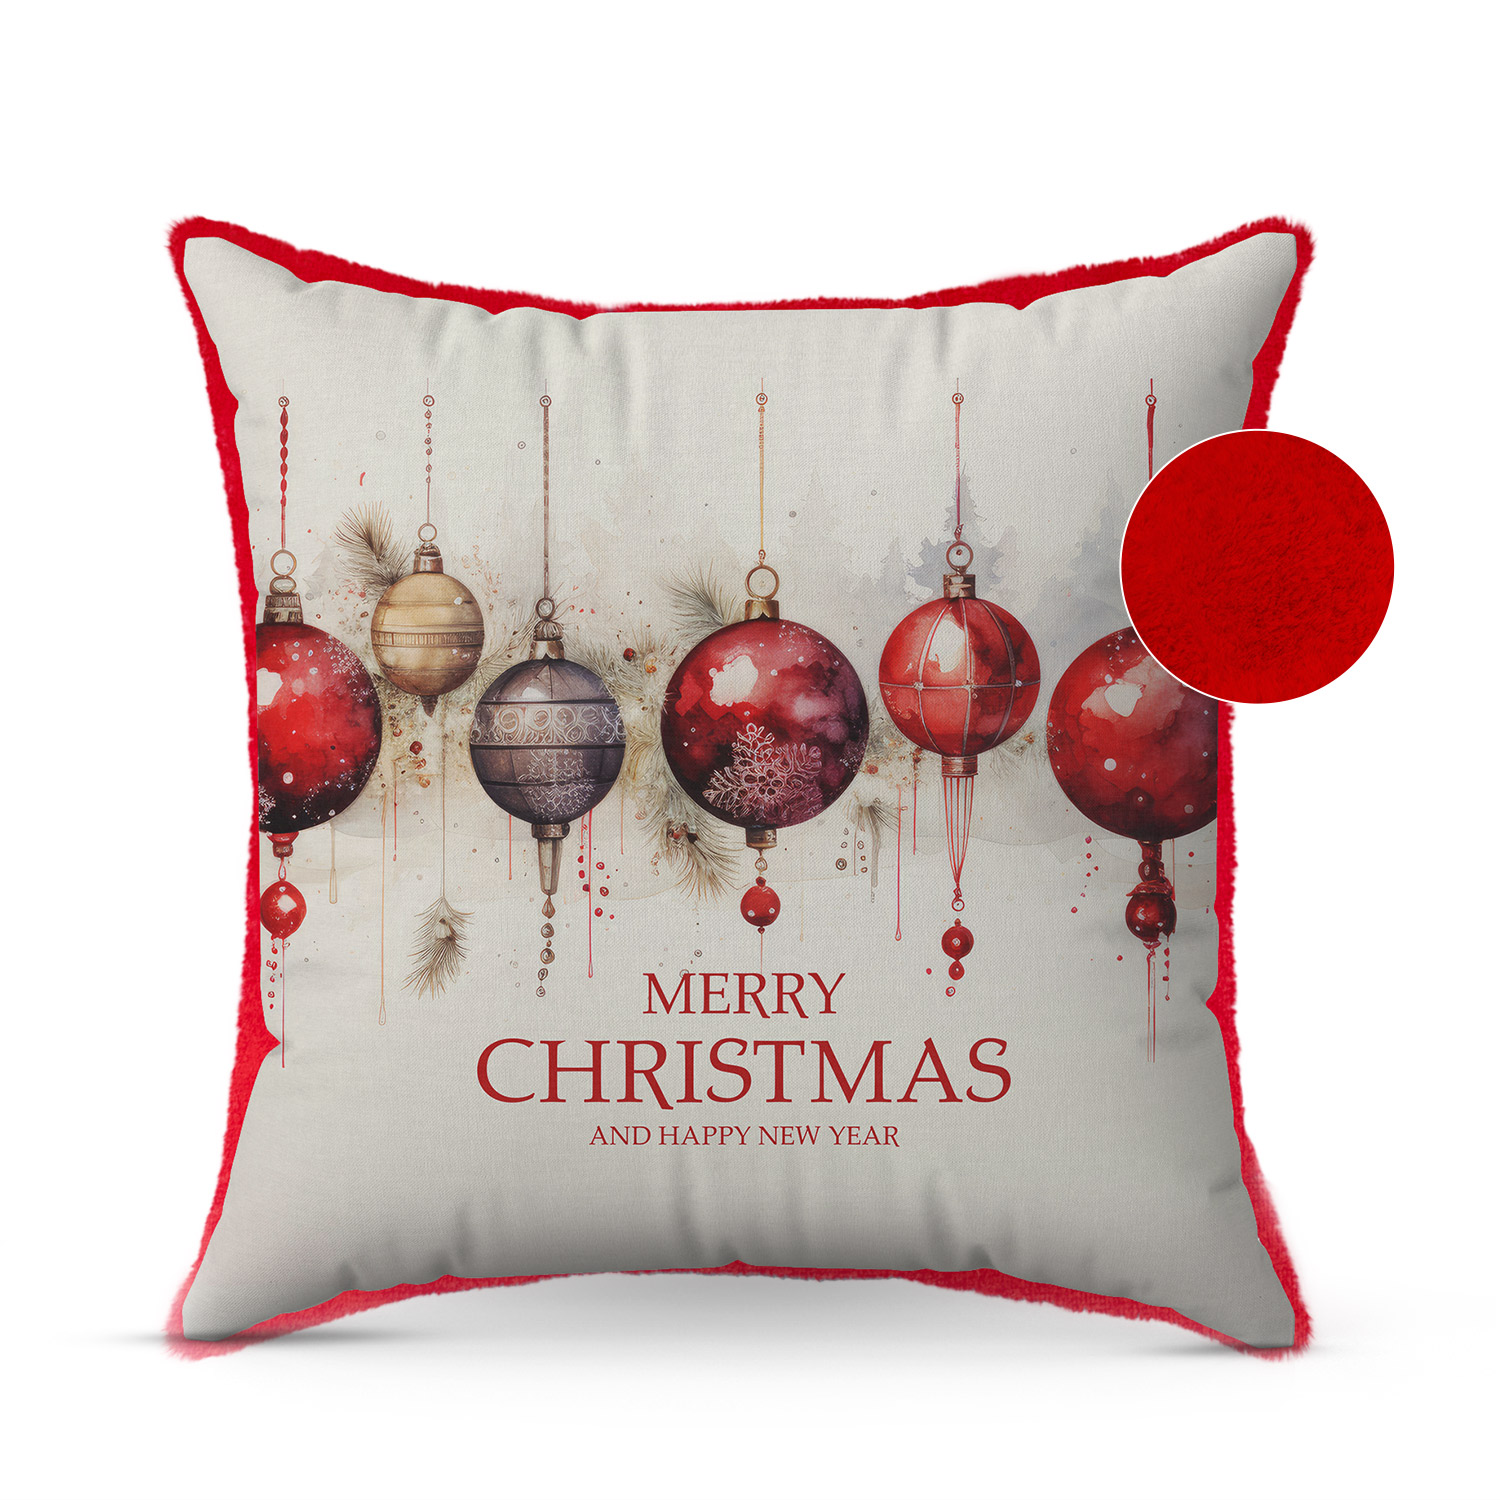 Christmas pillow with Christmas balls